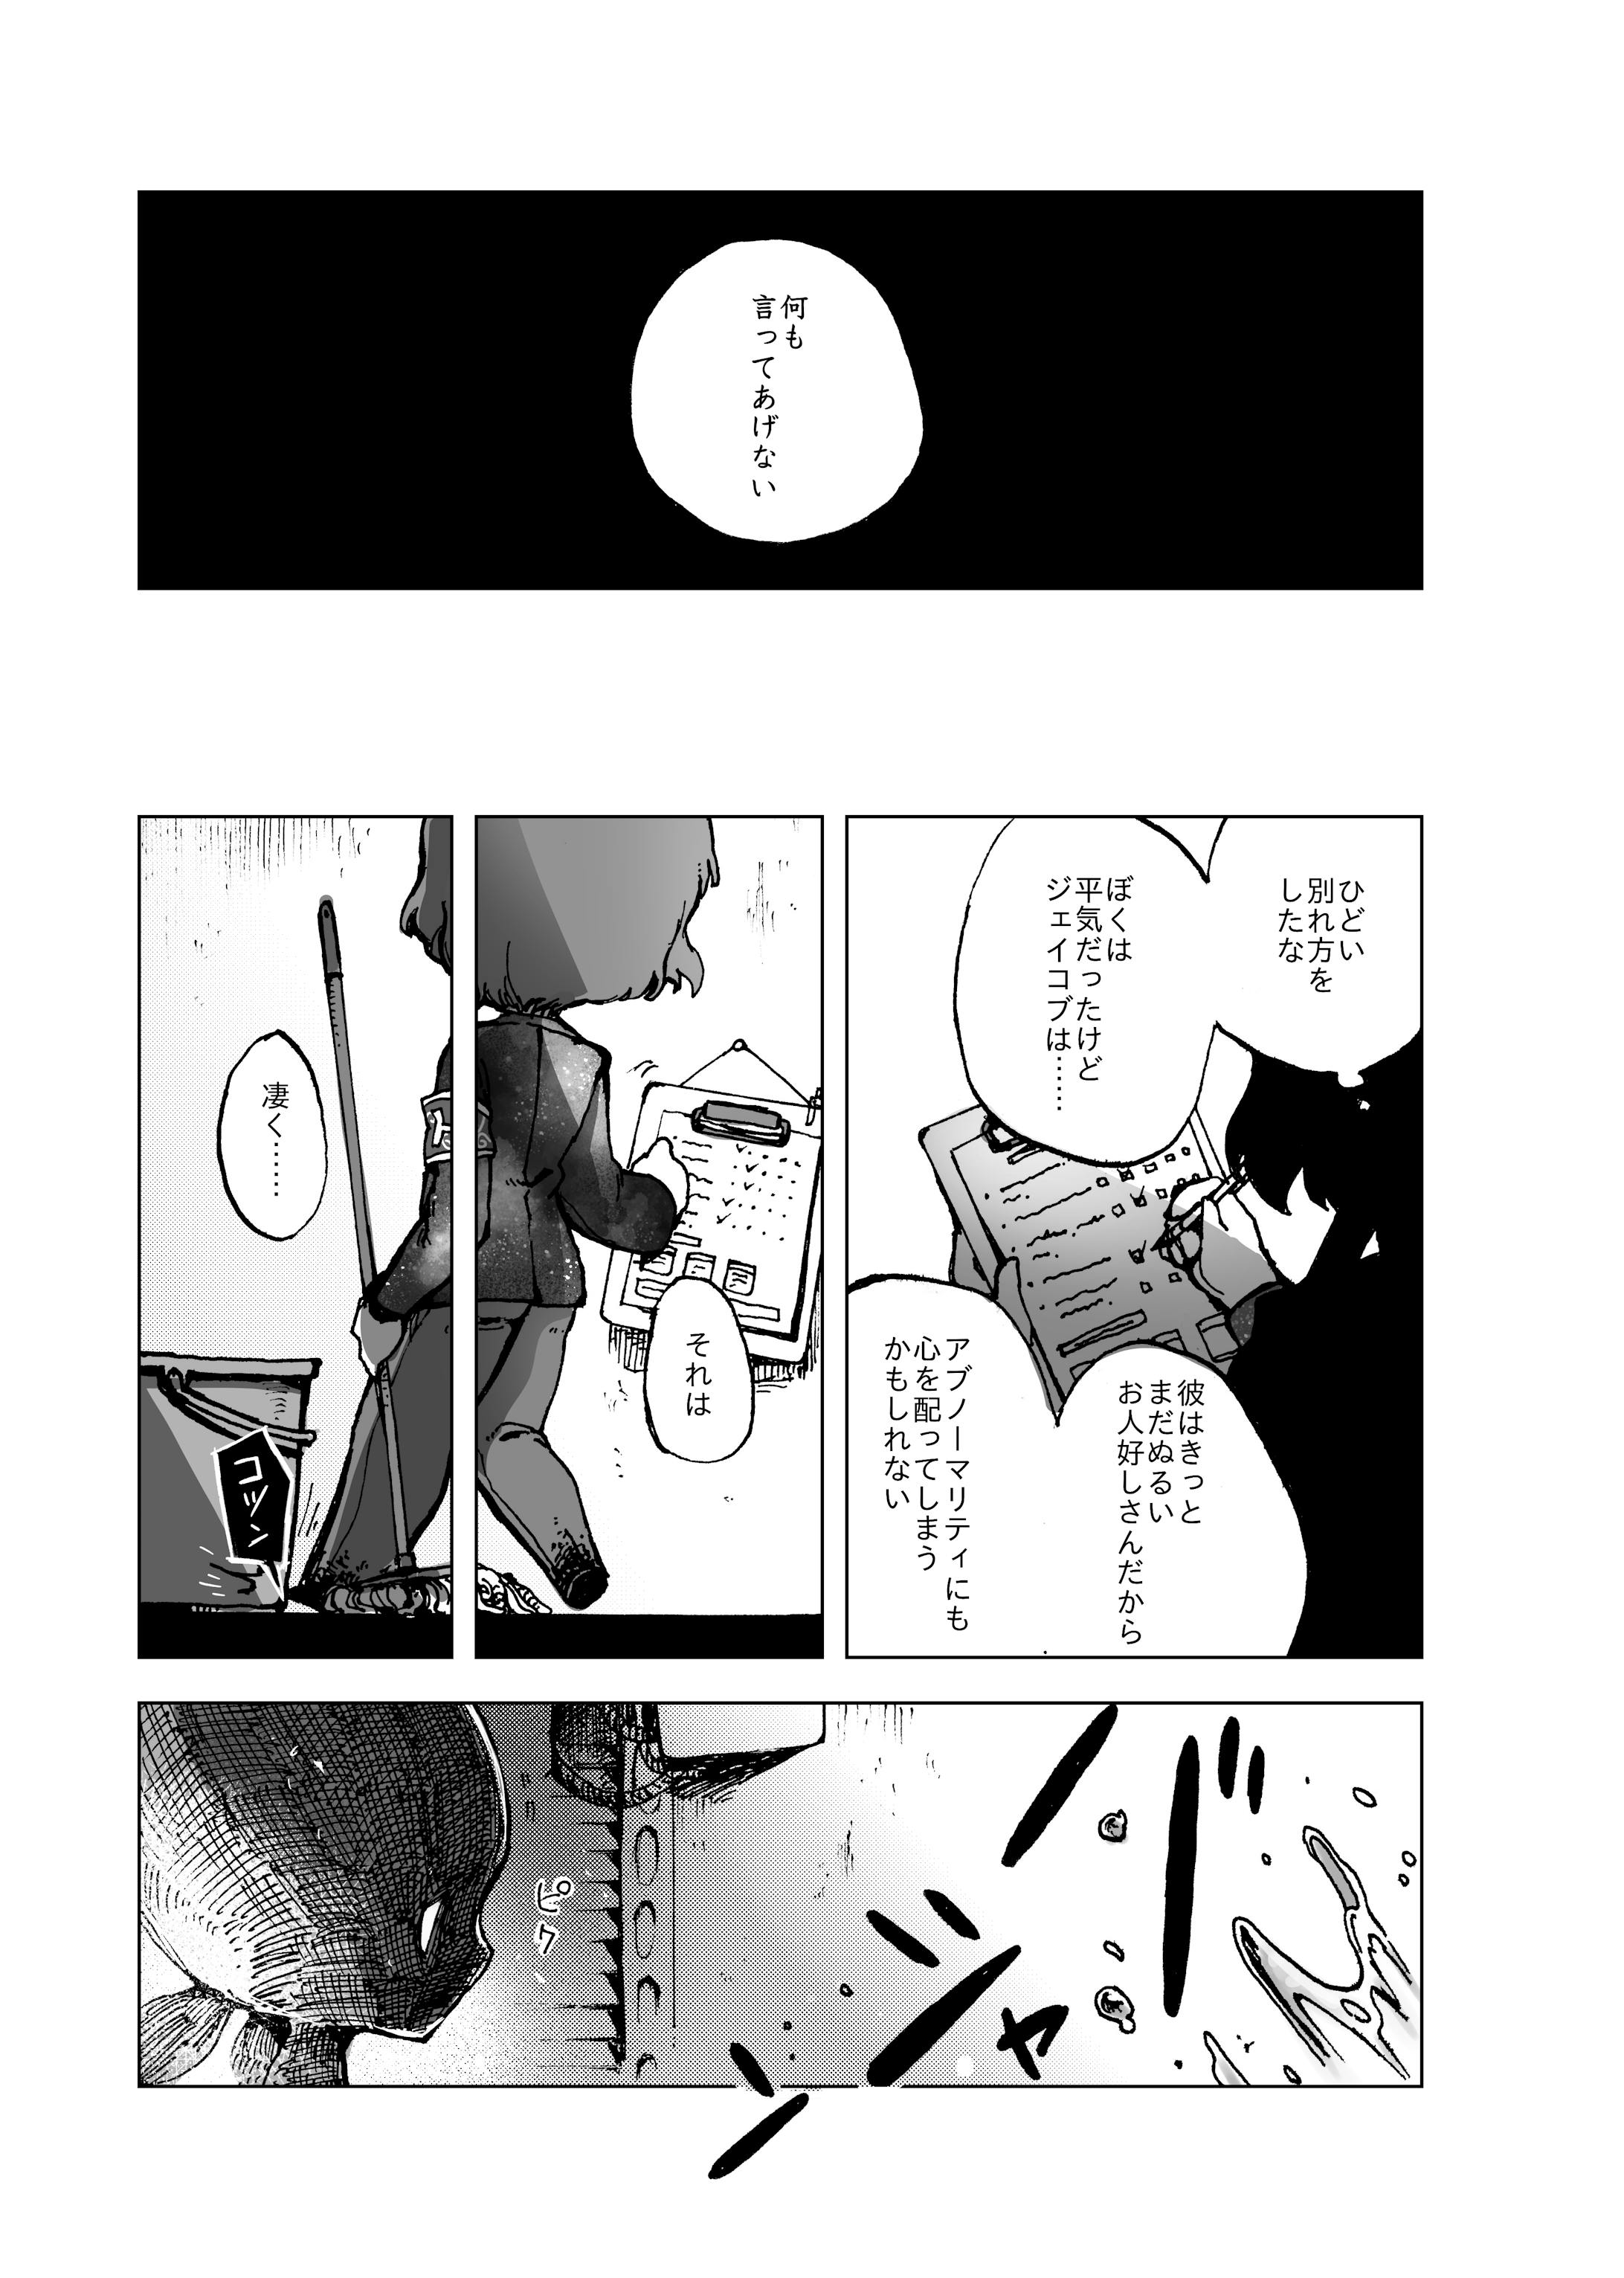 LC カラー&モノクロ漫画-7